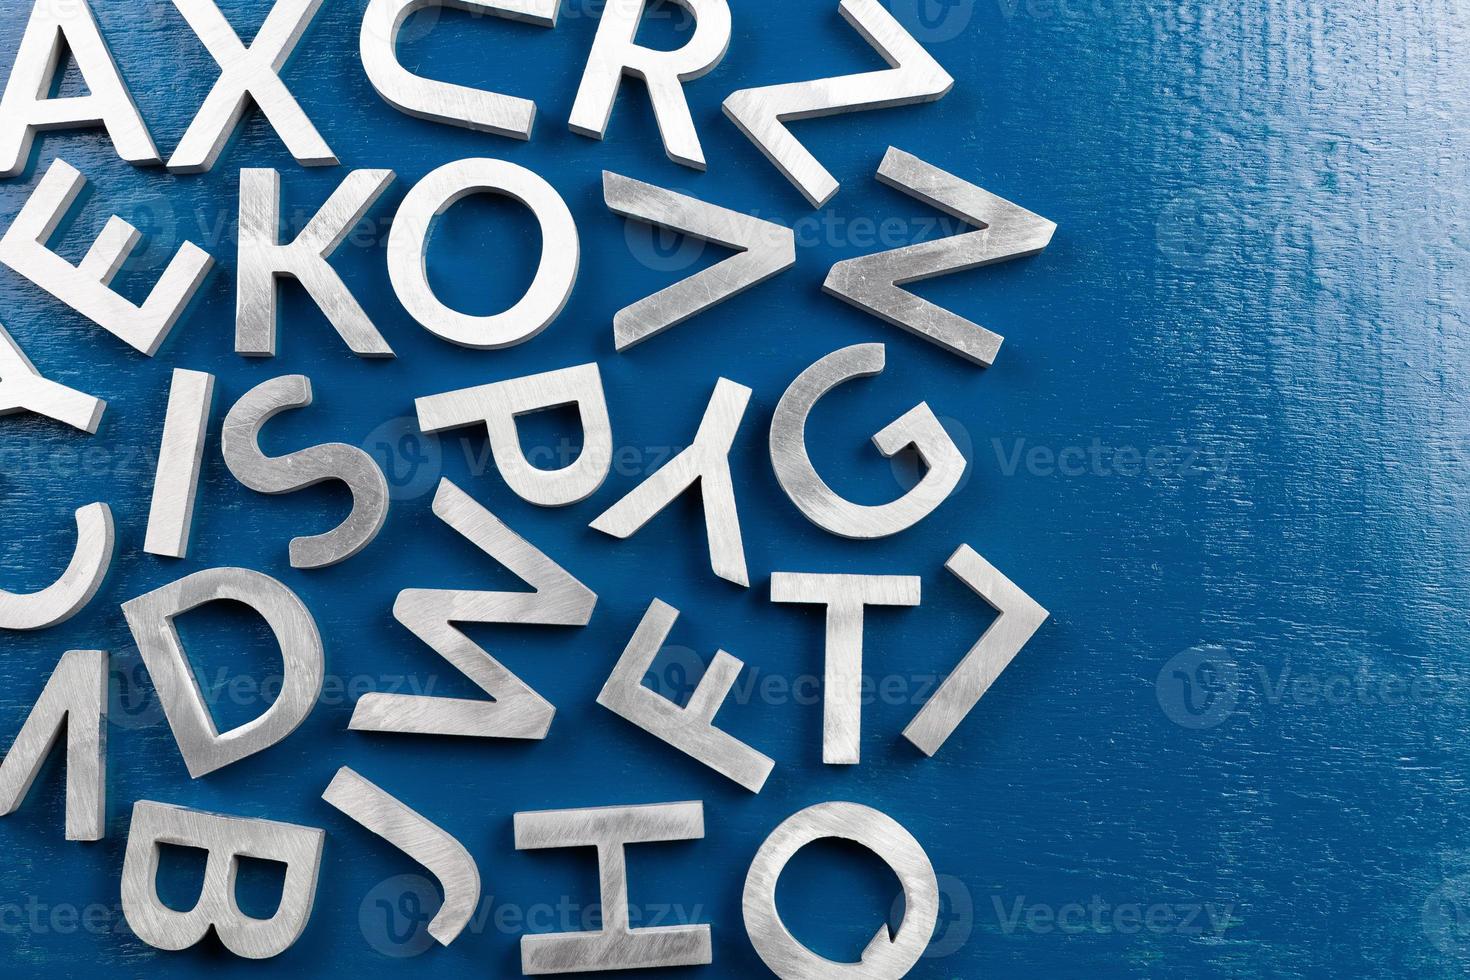 maquete plana de caracteres do alfabeto de metal prateado no fundo da placa pintada azul com copyspace. foto